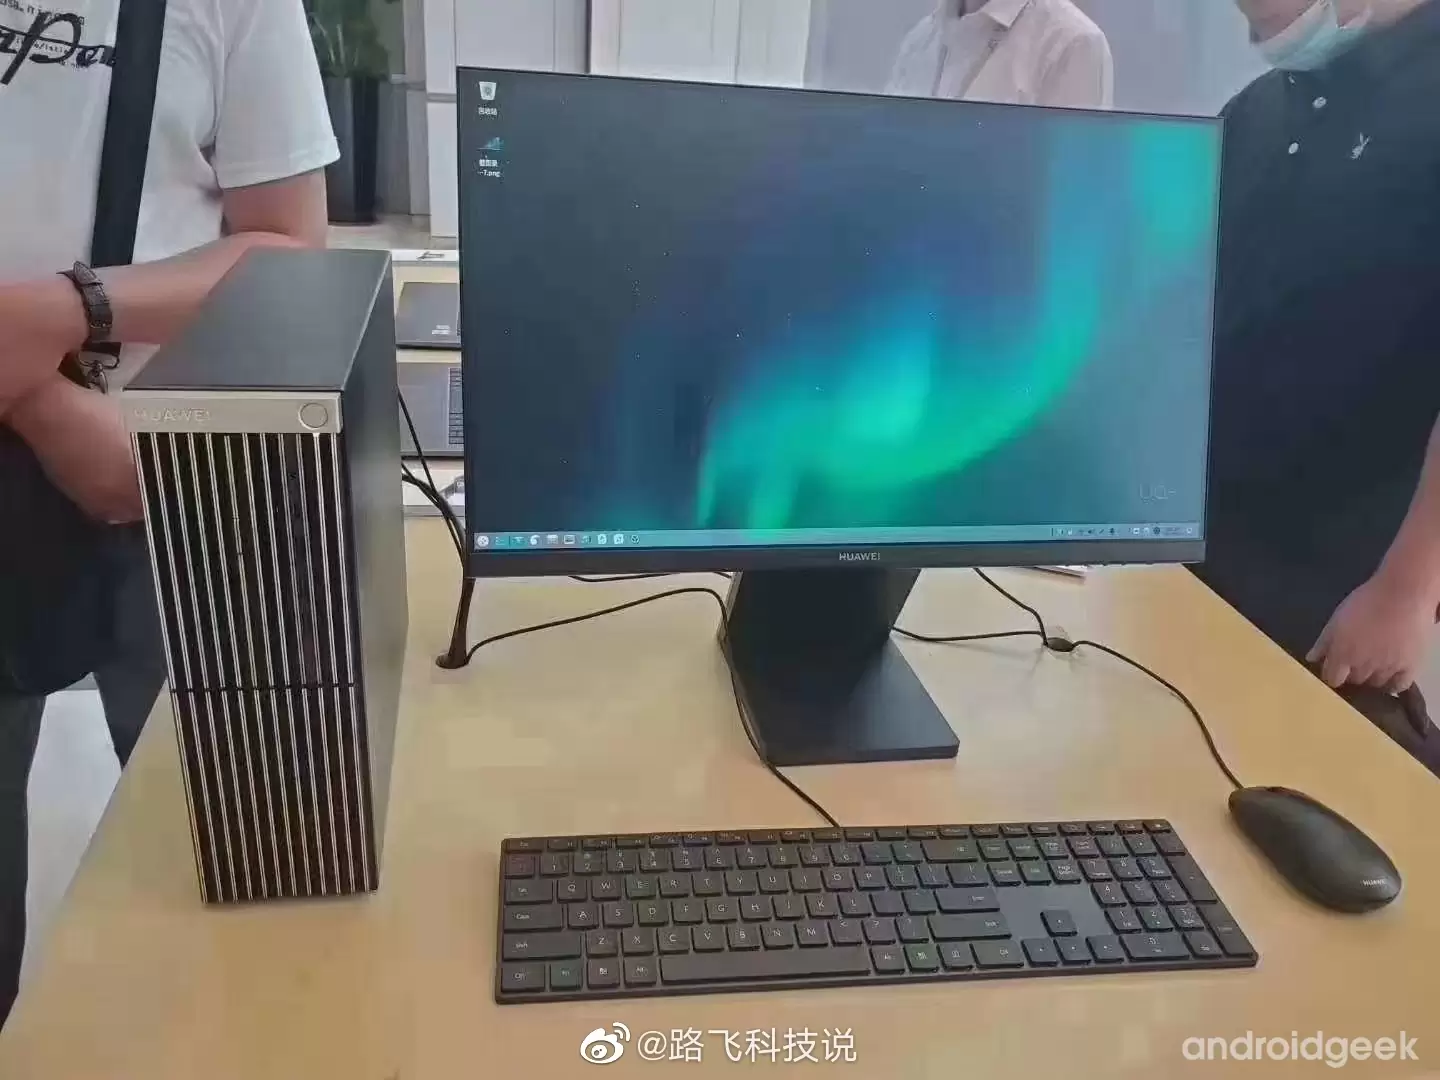 PC da Huawei - Especificações, e imagens da Huawei MateStation reveladas 6